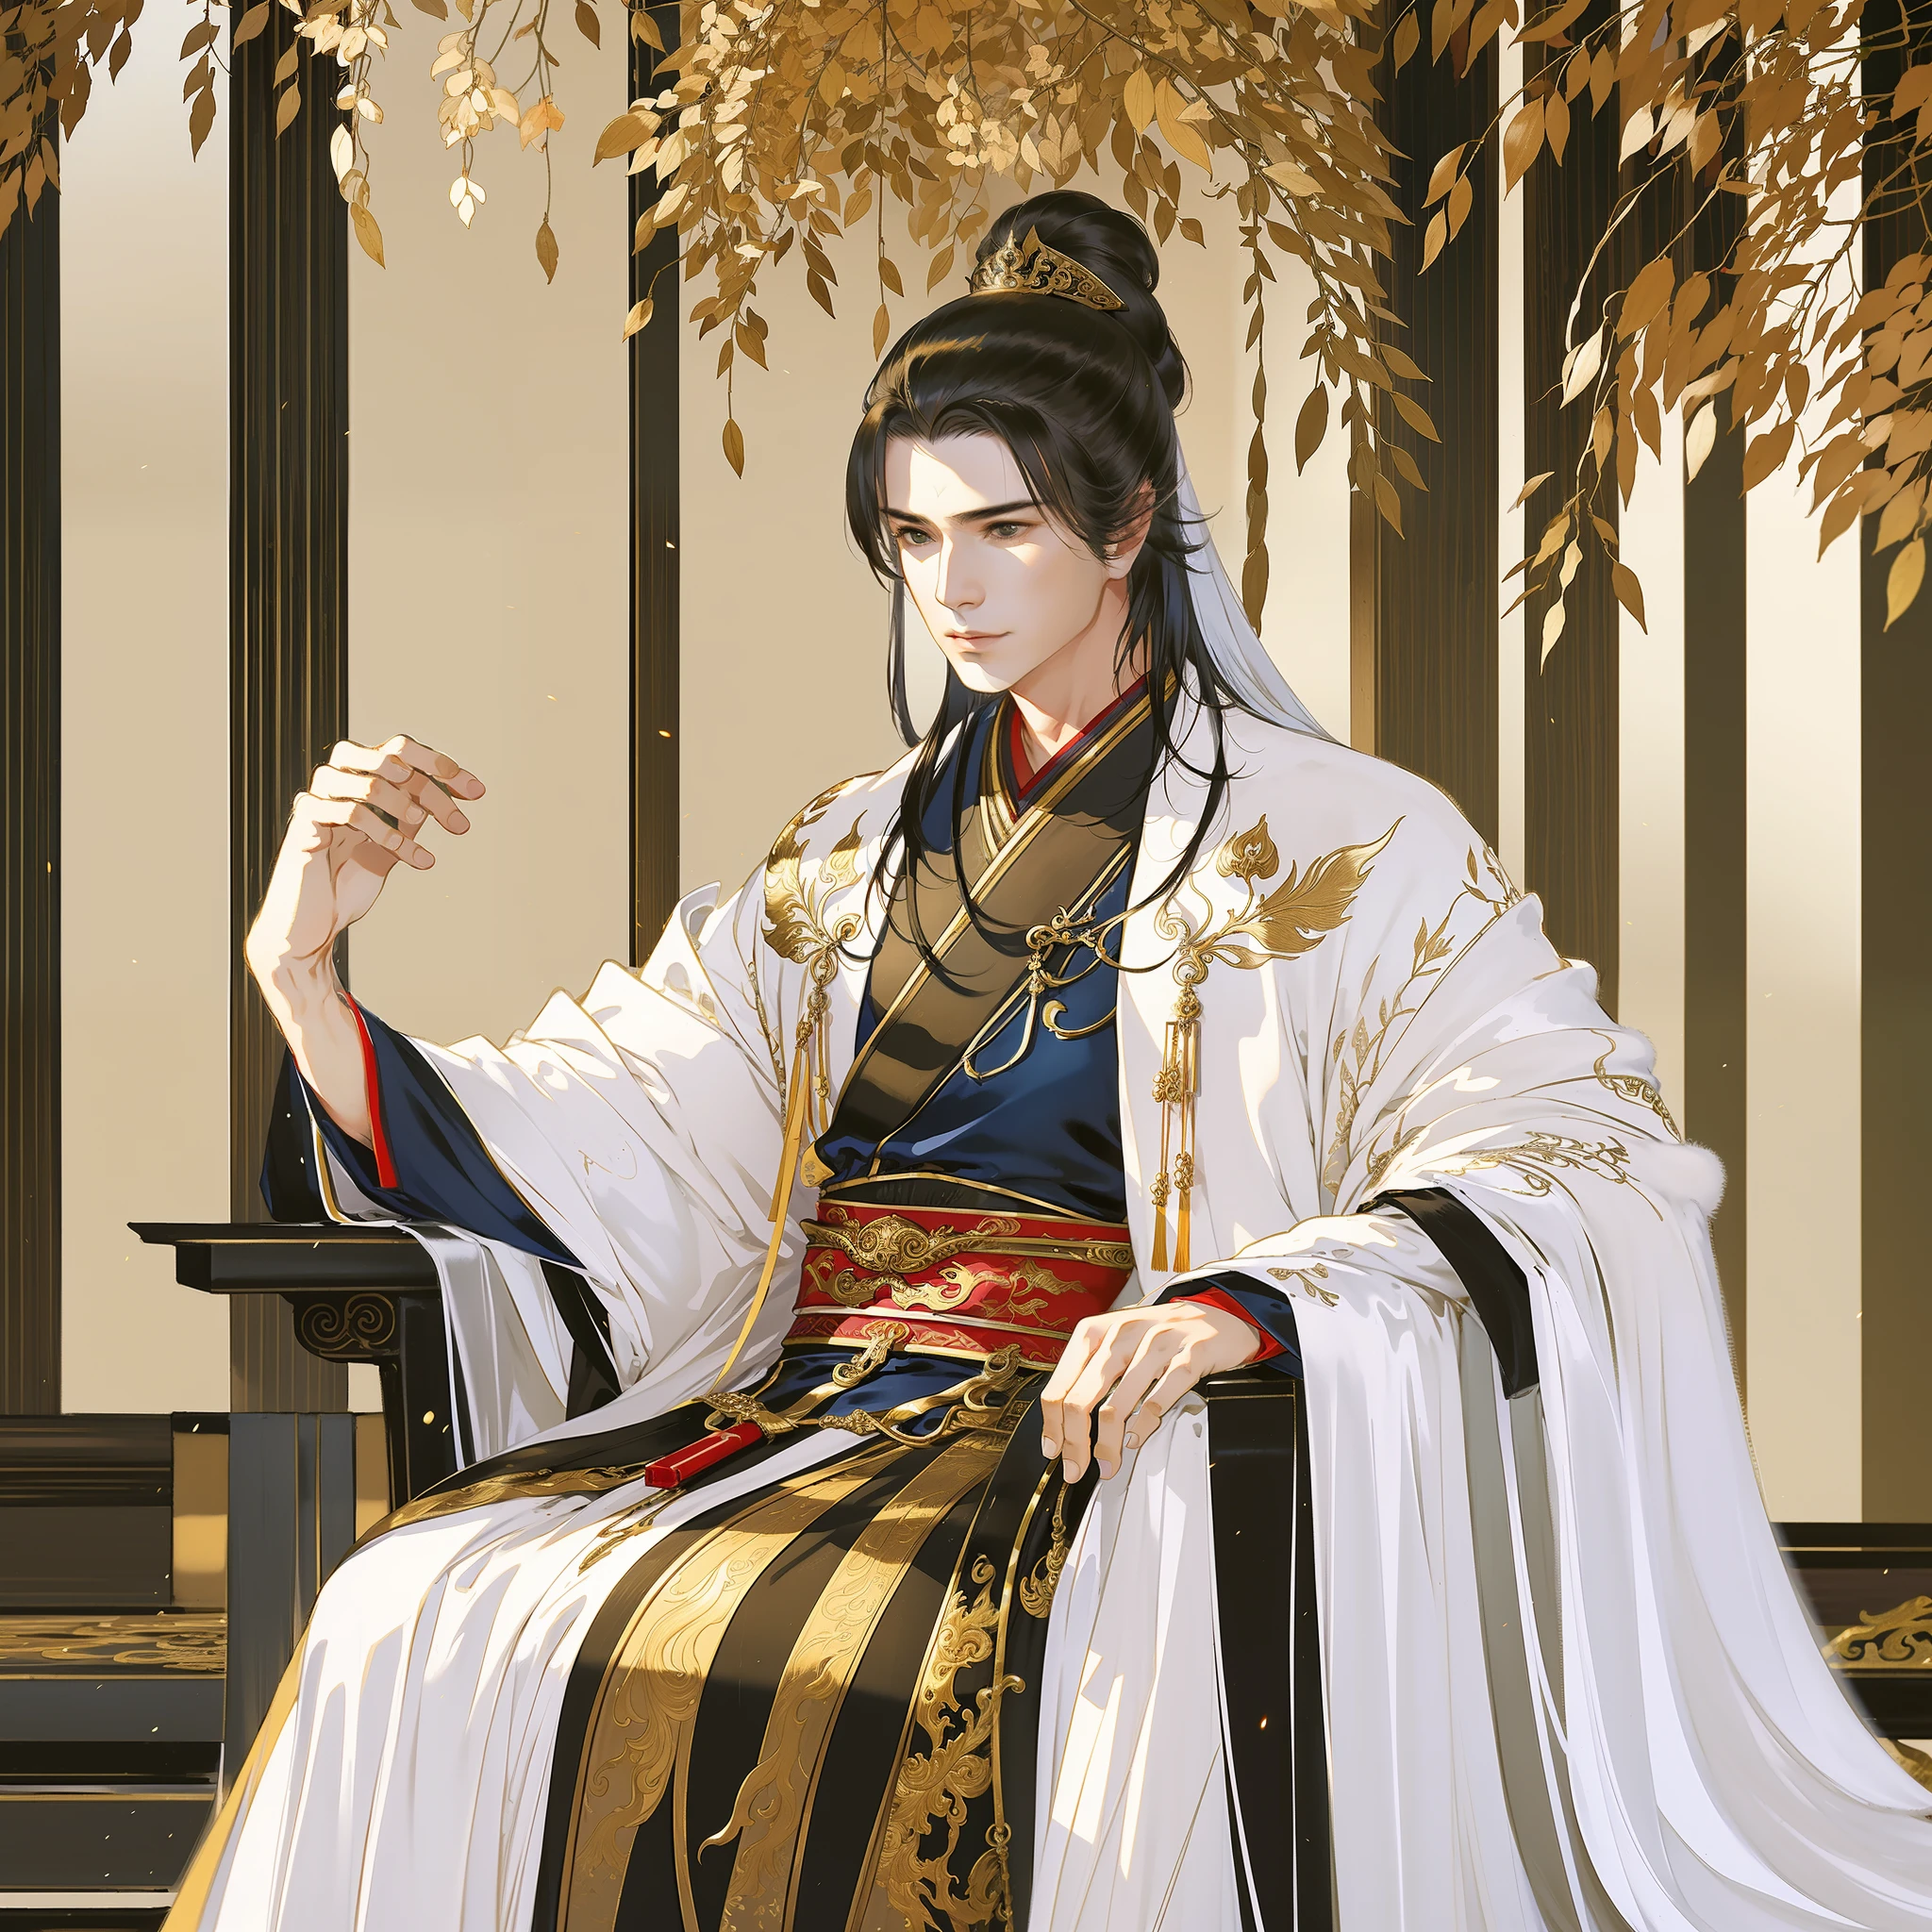 中国古代帅哥, 犀利的眼光, 五官清晰, 穿汉服, 坐在宝座上, 空荡荡的宫殿, 王者气质, 全身肖像, 清晰的脸, 漂亮的眼睛, 杰作, 非常详细, 史诗般的作曲, 超高清, 高质量, 最好的质量, 32K